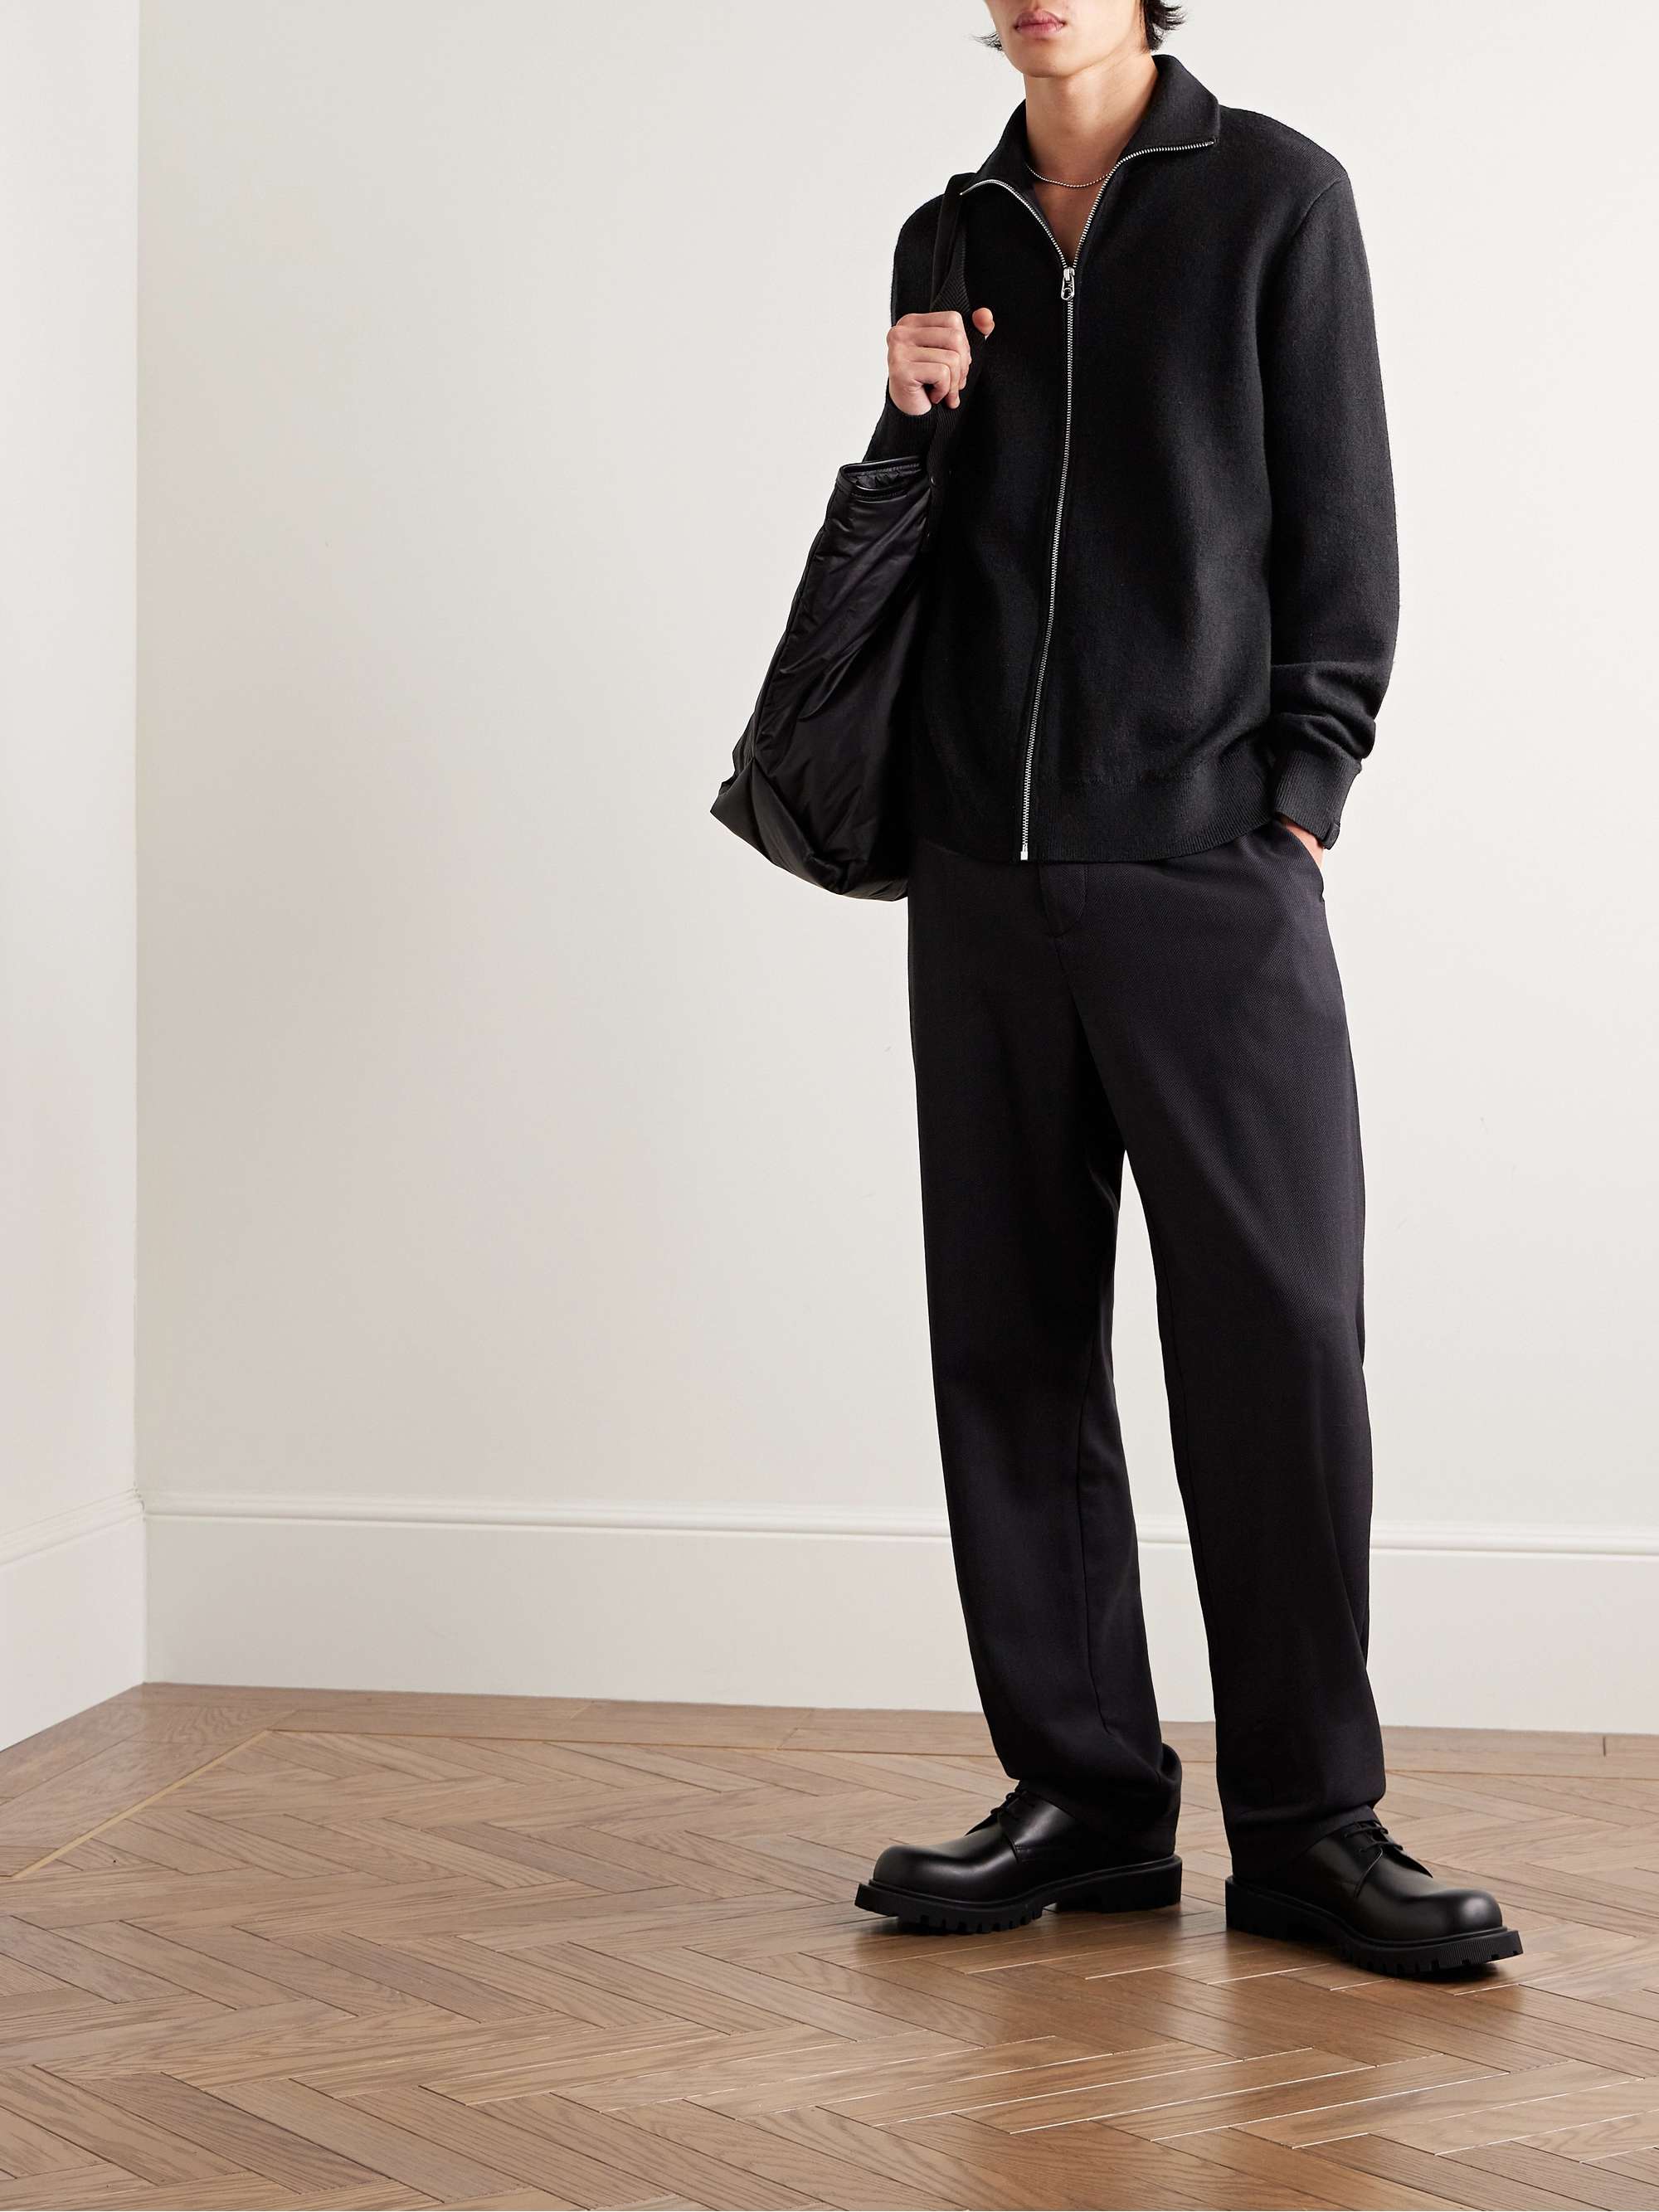 RAG & BONE Andrew Merino Wool-Blend Zip-Up Cardigan for Men | MR PORTER